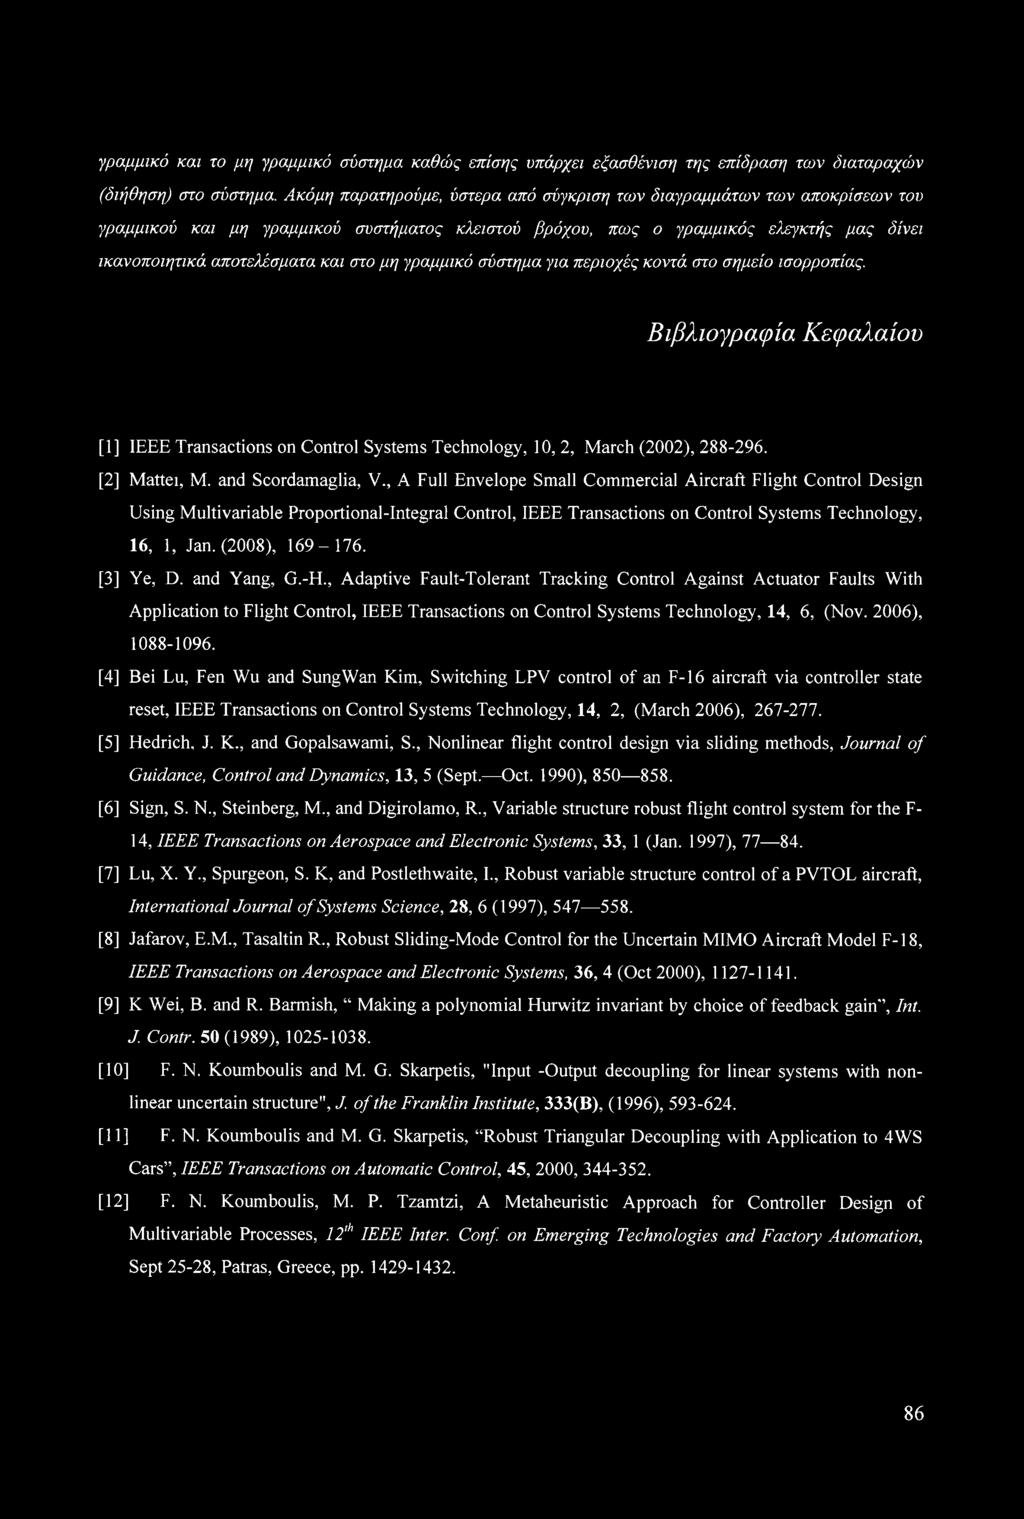 μη γραμμικό σύστημα για περιοχές κοντά στο σημείο ισορροπίας. Βιβλιογραφία Κεφαλαίου [1] IEEE Transactions on Control Systems Technology, 10, 2, March (2002), 288-296. [2] Mattel, M.